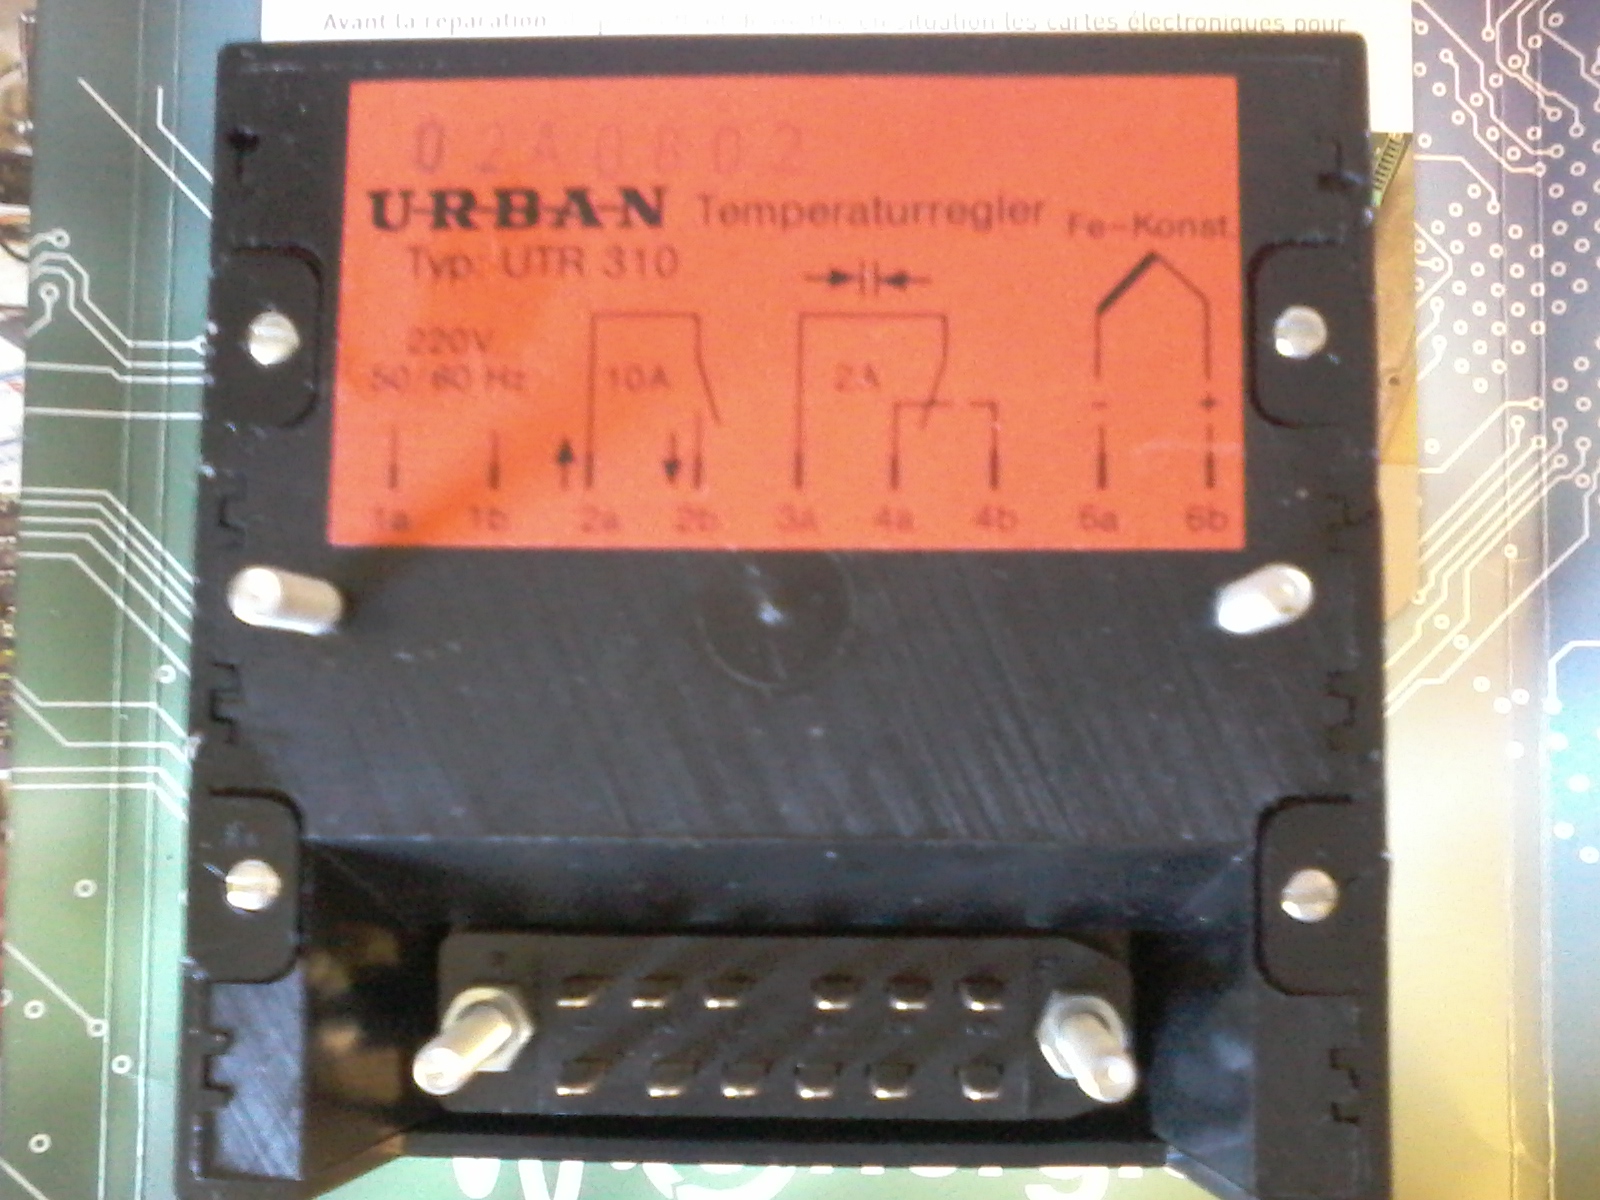 urban-UTR-310